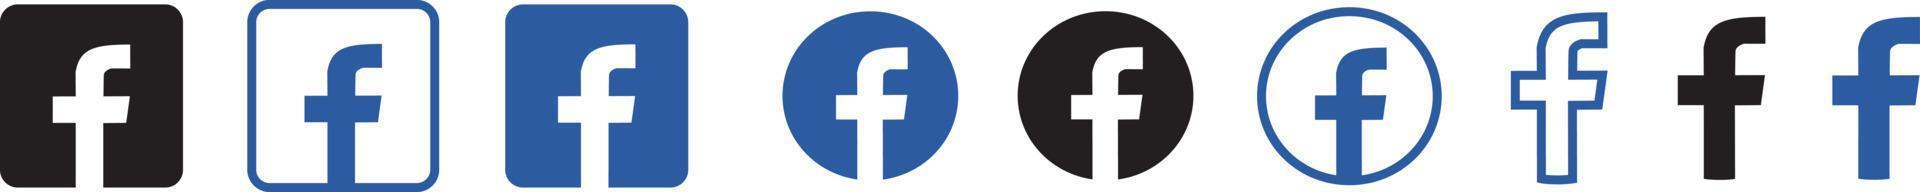 Facebook-Logo-Set. Facebook-Symbole. Social Media Logo Set Vektor